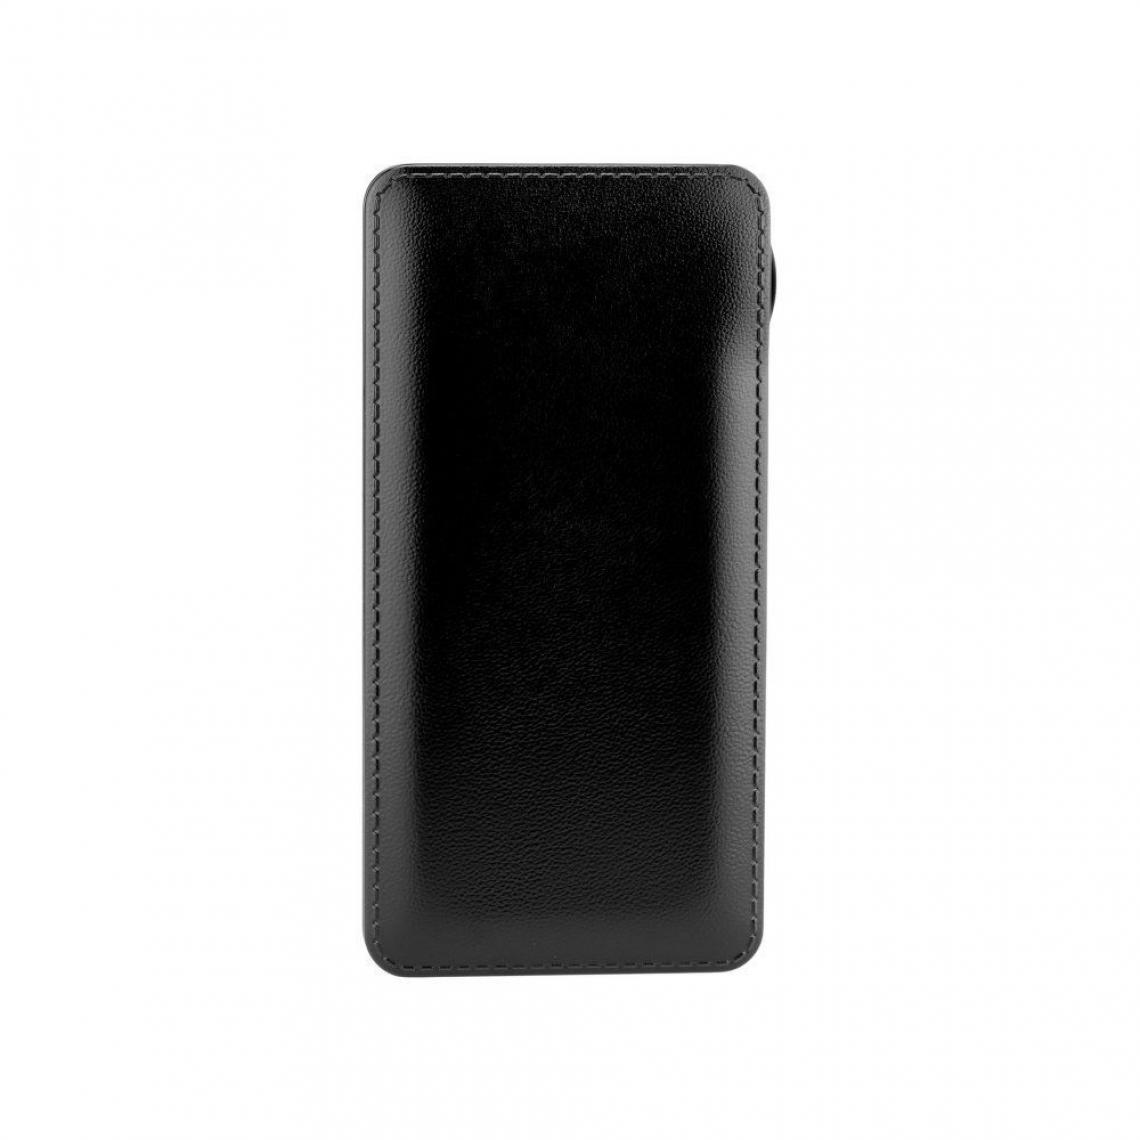 Ozzzo - Chargeur batterie externe 20000 mAh powerbank ozzzo noir pour Samsung Galaxy S20+ - Autres accessoires smartphone